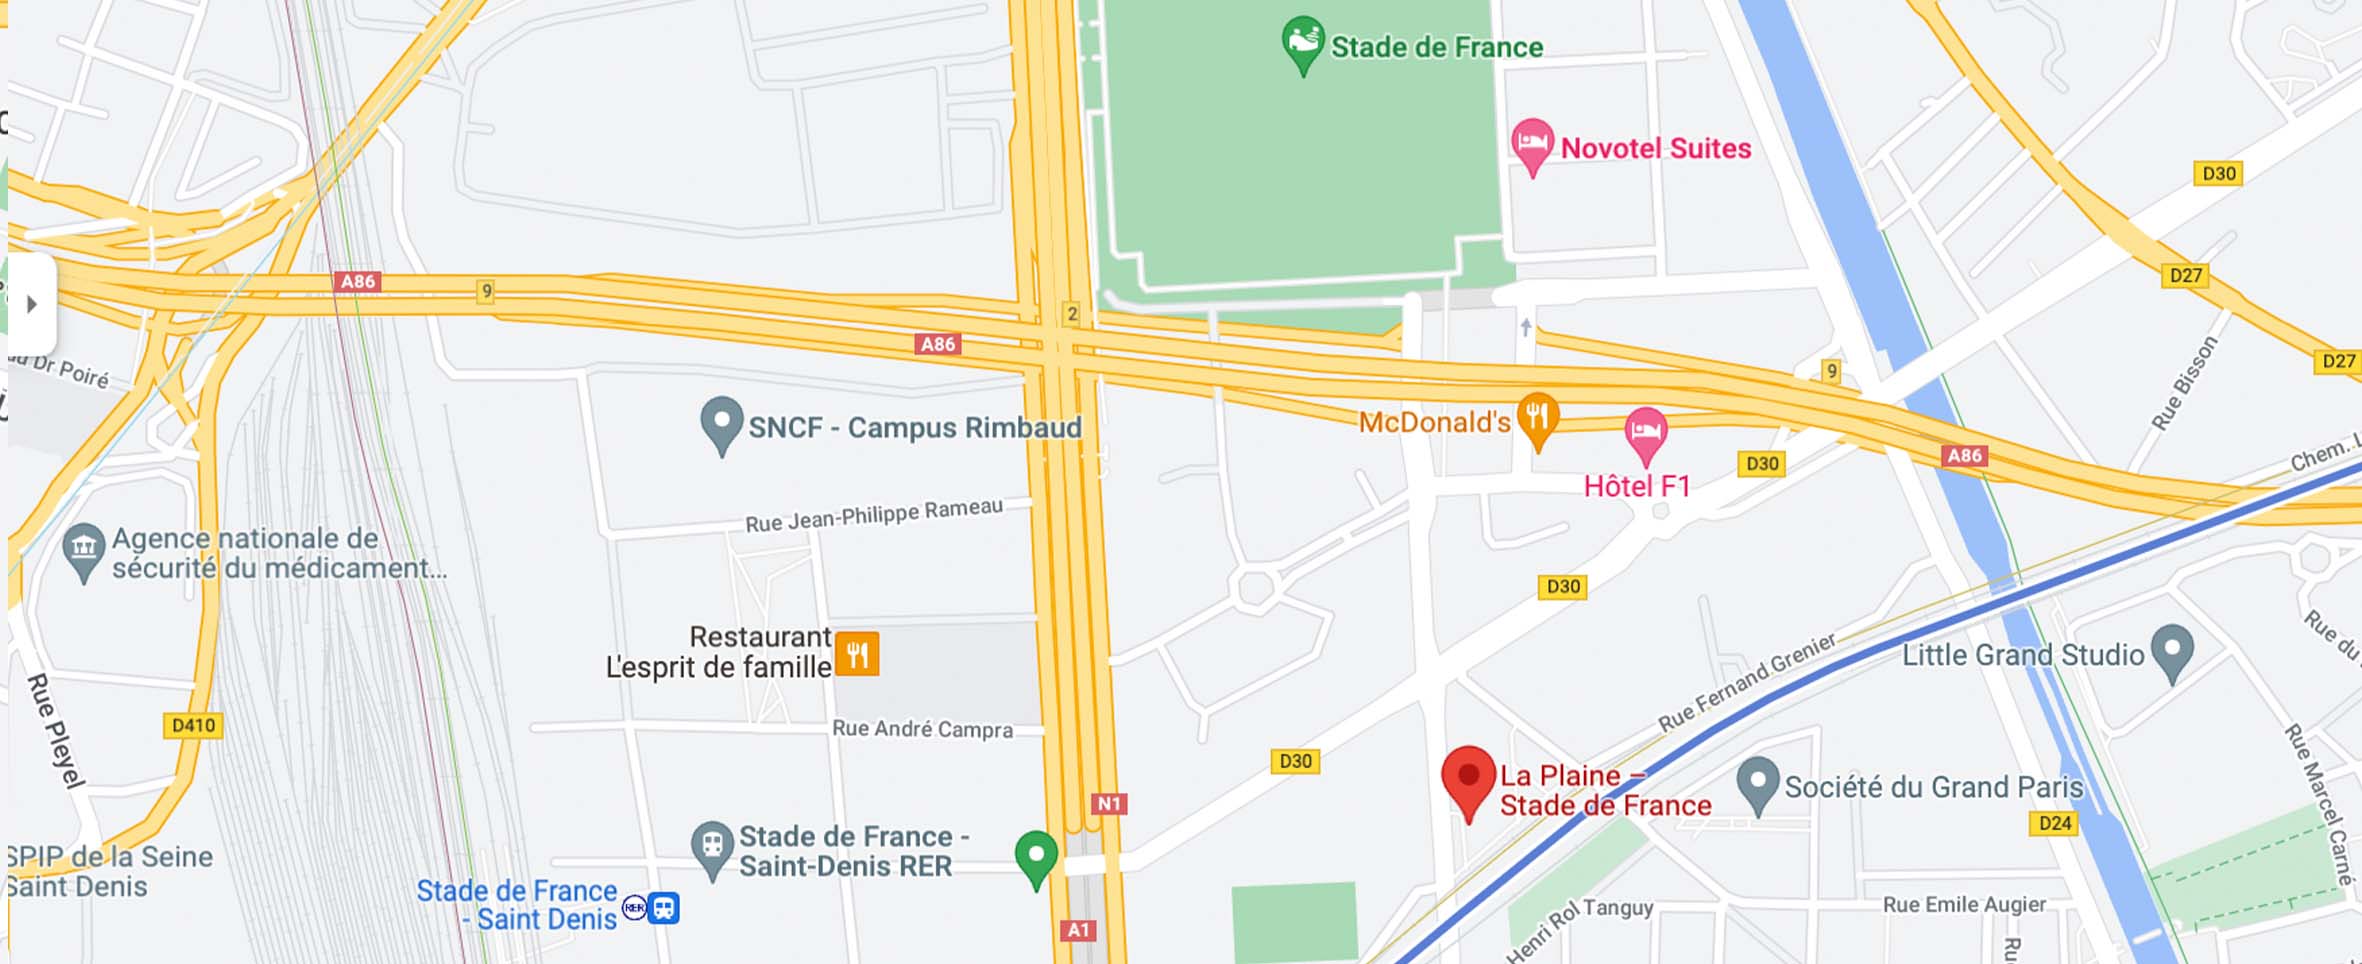 Mapa para llegar al estadio de Francia